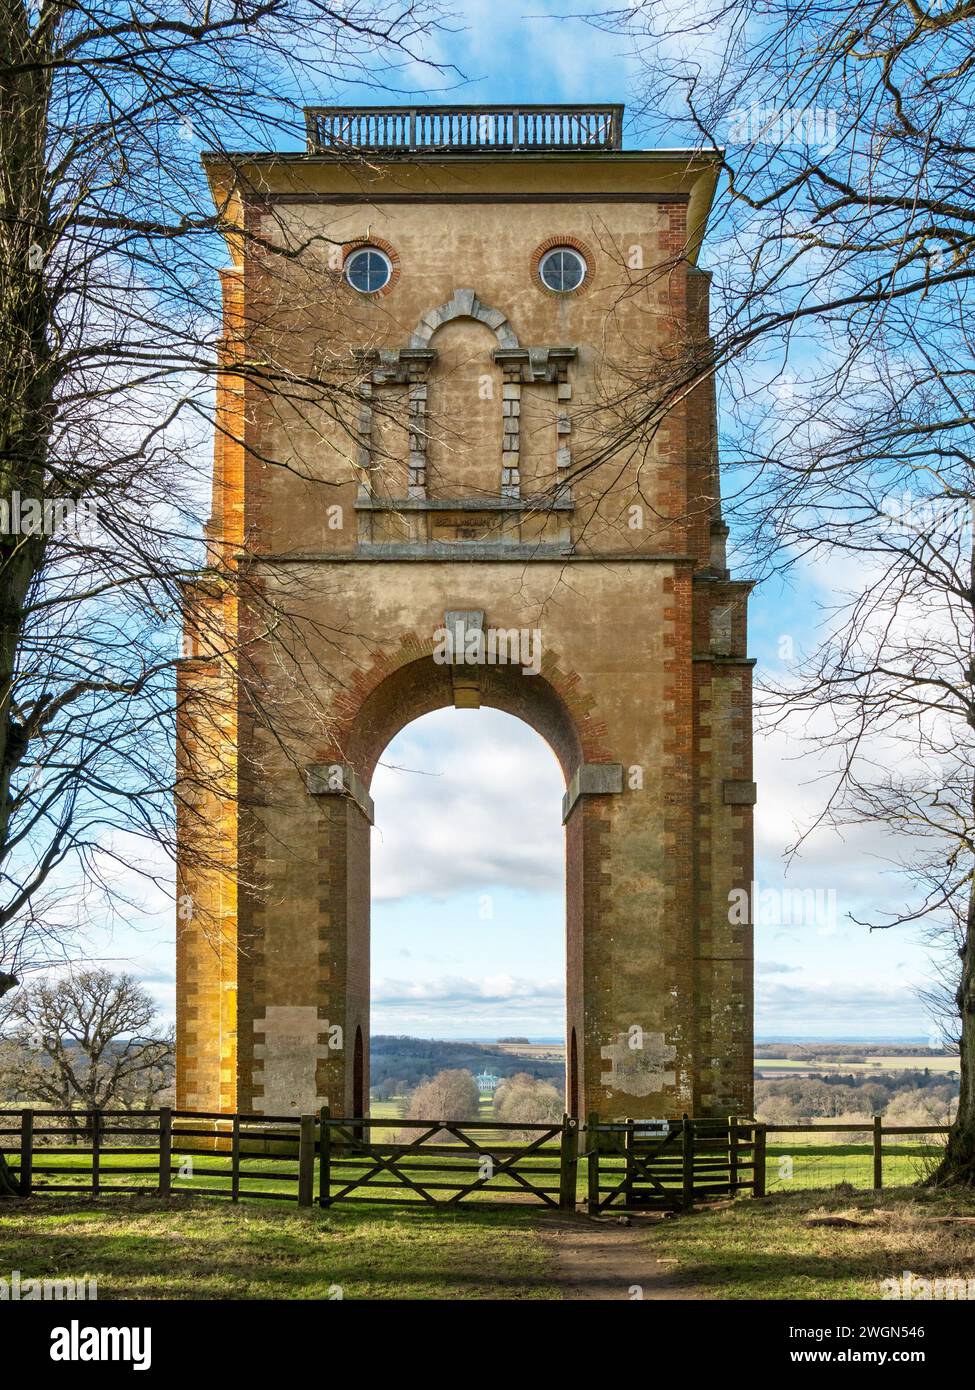 Vue à travers l'arche unique de Bellmount Tower sur l'avenue bordée d'arbres jusqu'à Belton House, Grantham, Lincolnshire, Angleterre, Royaume-Uni Banque D'Images